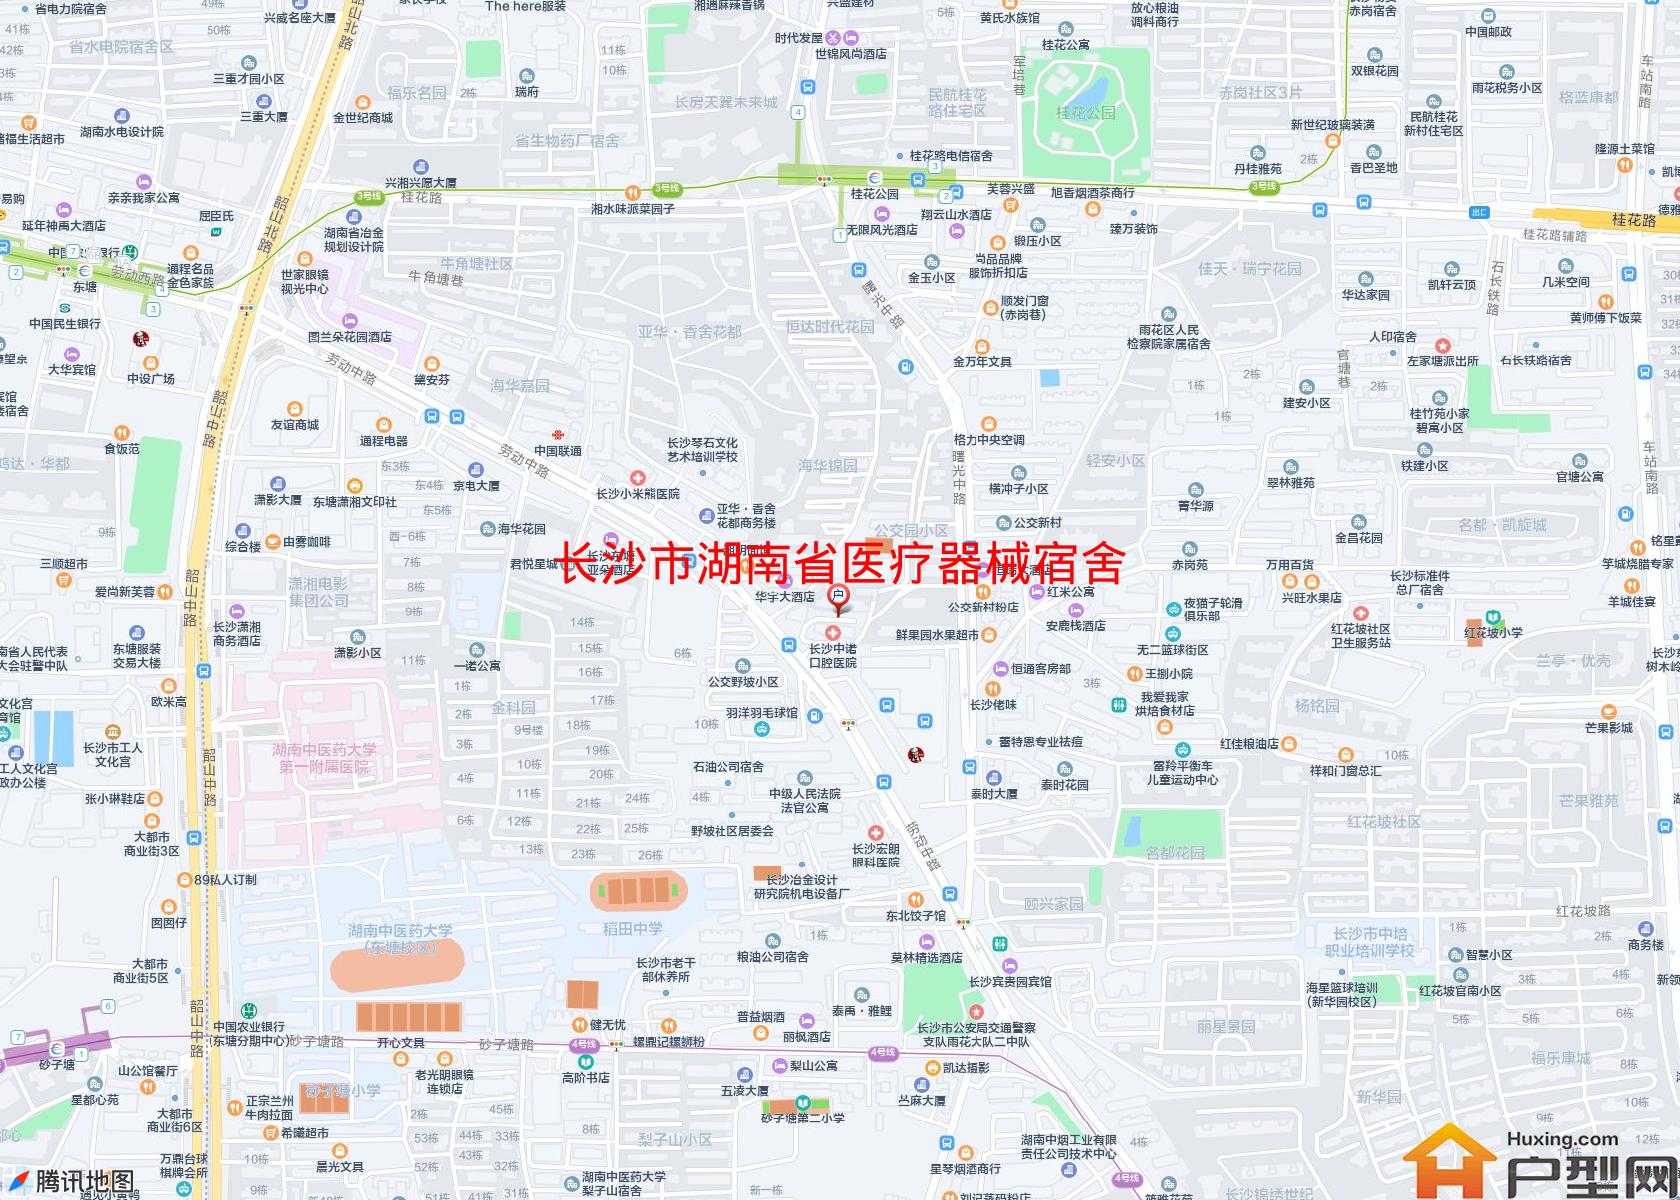 湖南省医疗器械宿舍小区 - 户型网